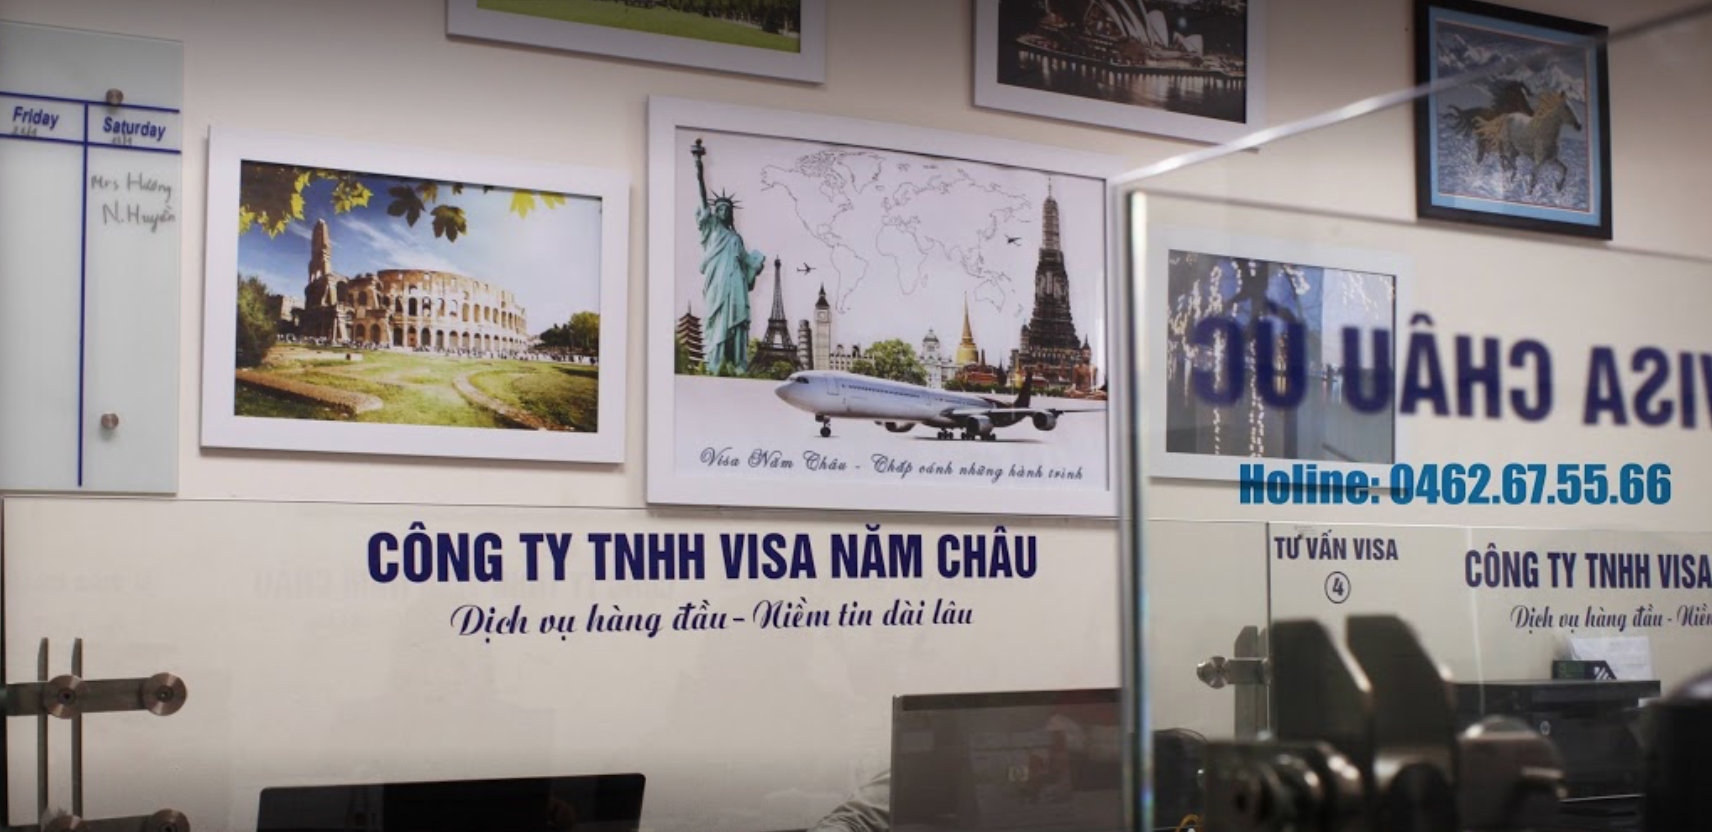 Công Ty Tnhh Visa Năm Châu tuyển dụng